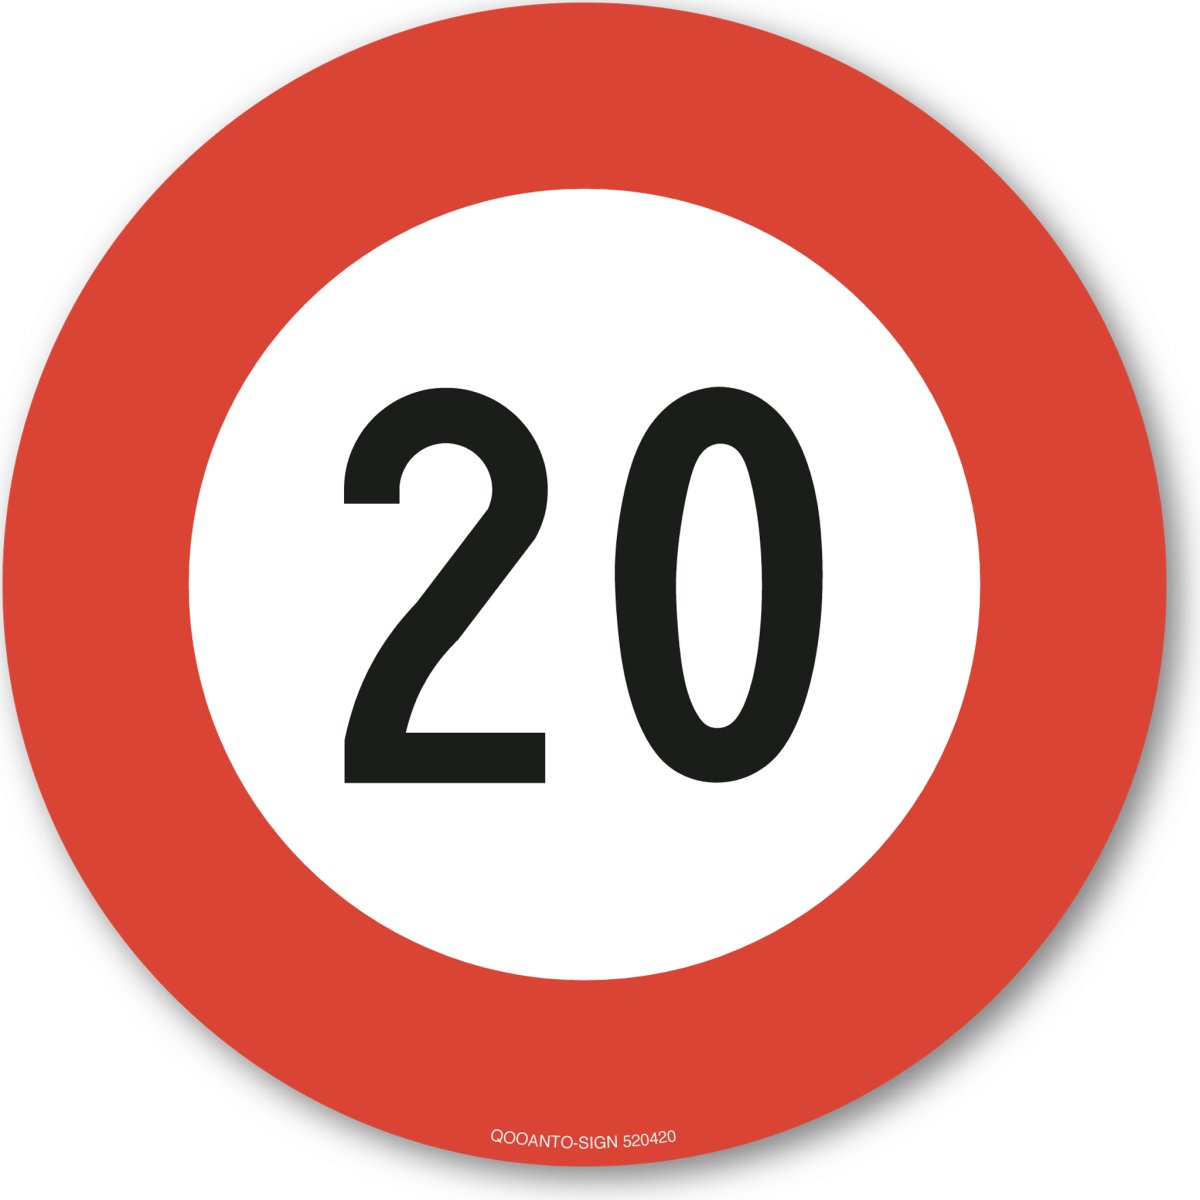 20 Höchstgeschwindigkeit Verkehrsschild oder Aufkleber aus Alu-Verbund oder Selbstklebefolie mit UV-Schutz - QOOANTO-SIGN